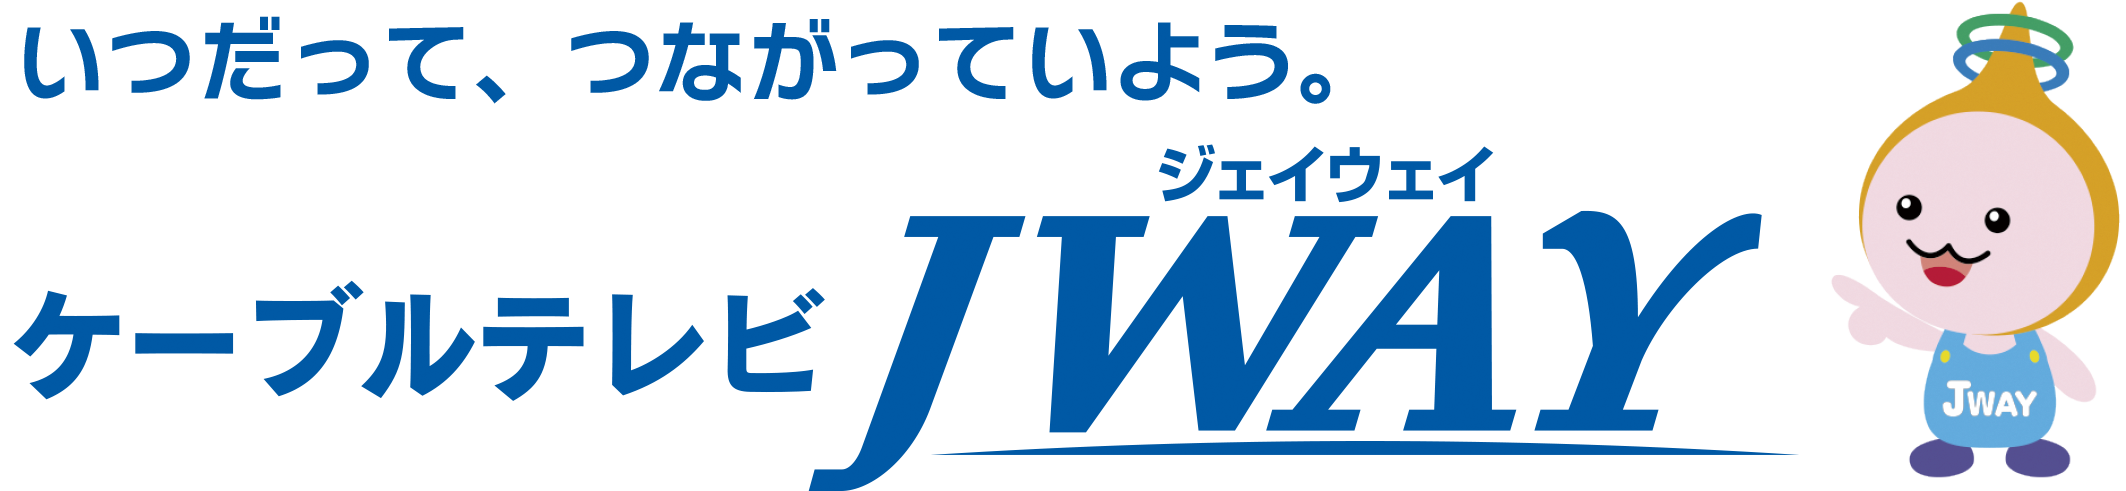 ケーブルテレビ JWAY